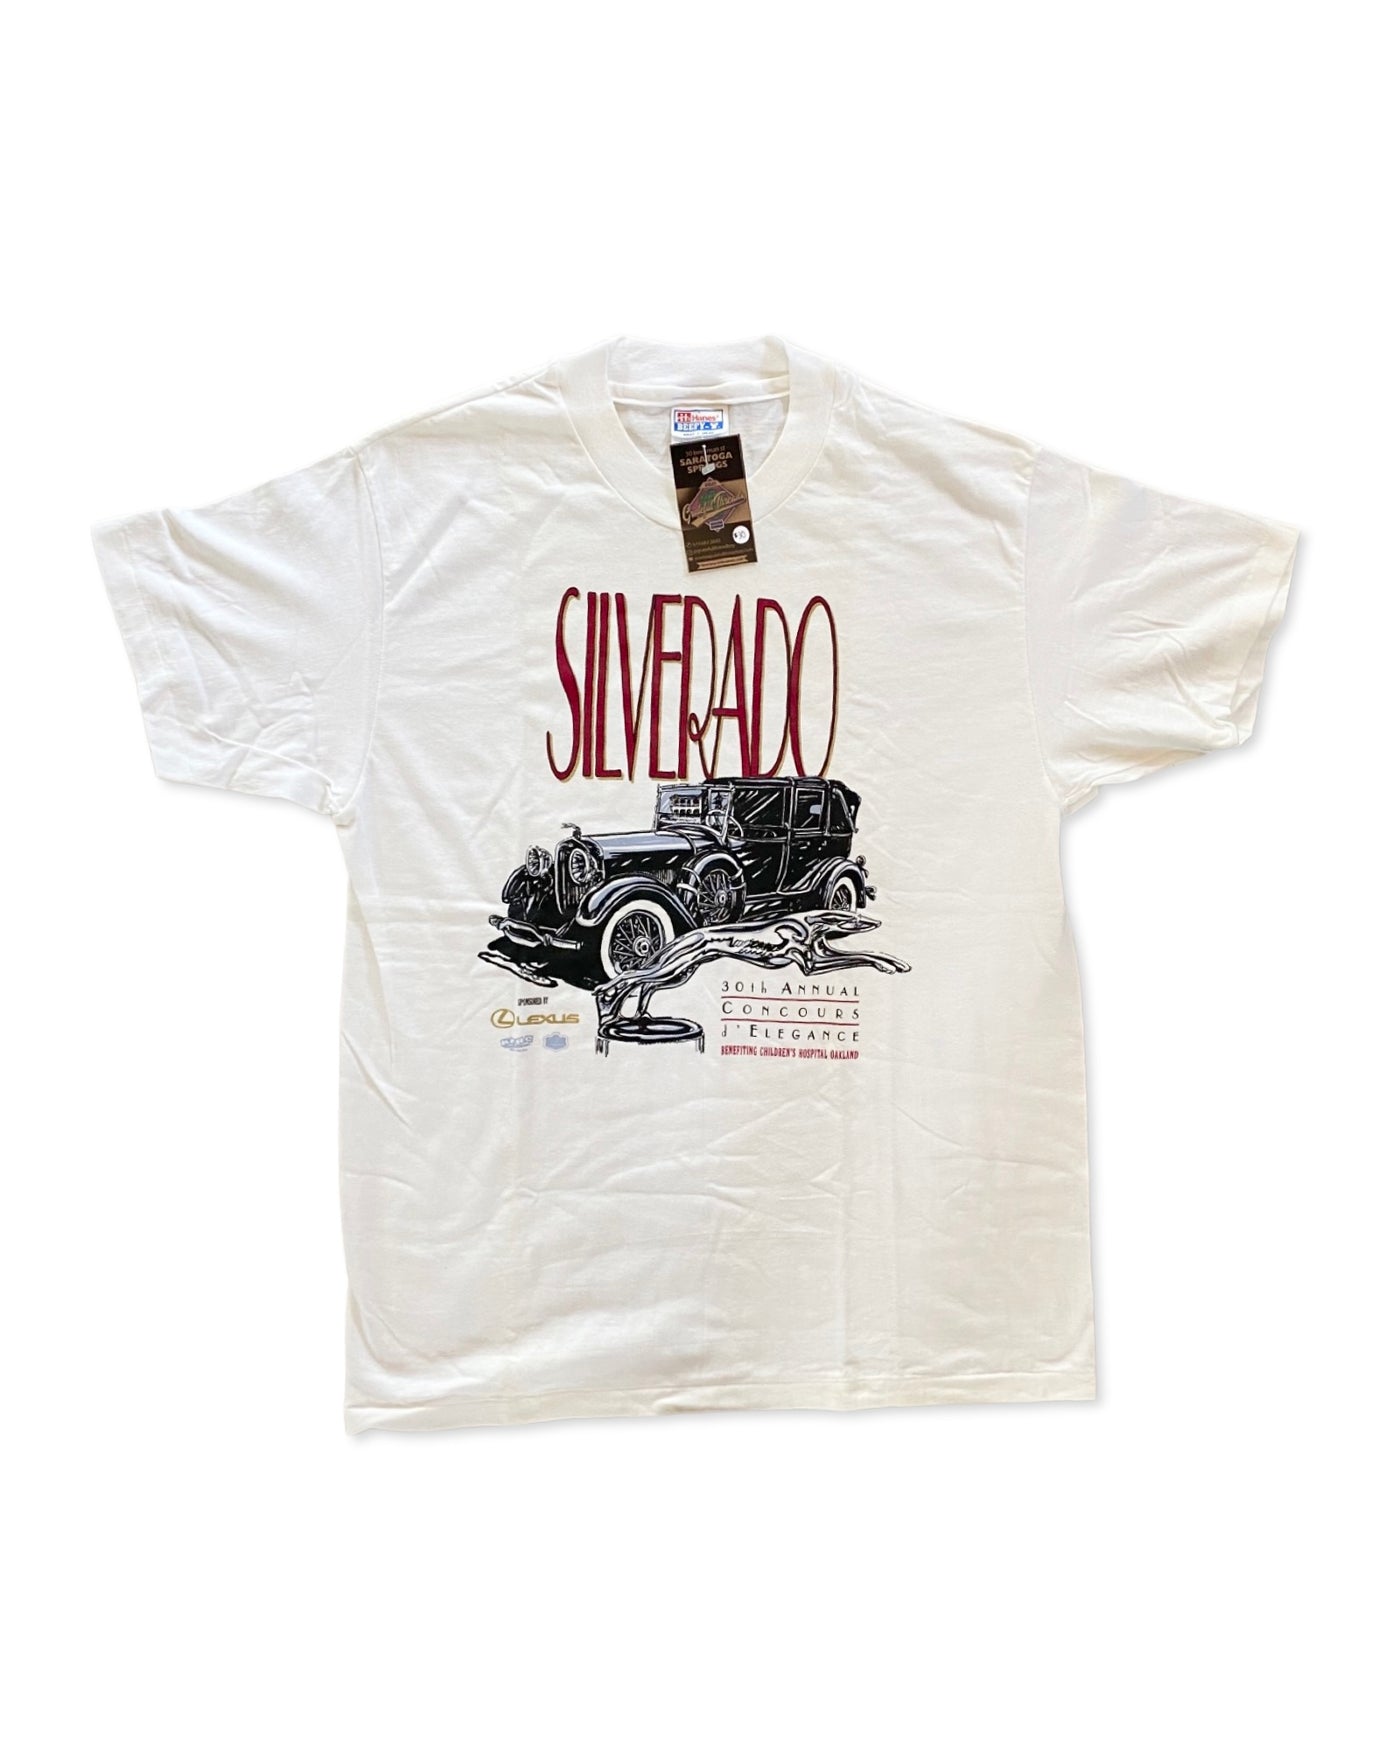 Vintage 90s Silverado T-Shirt